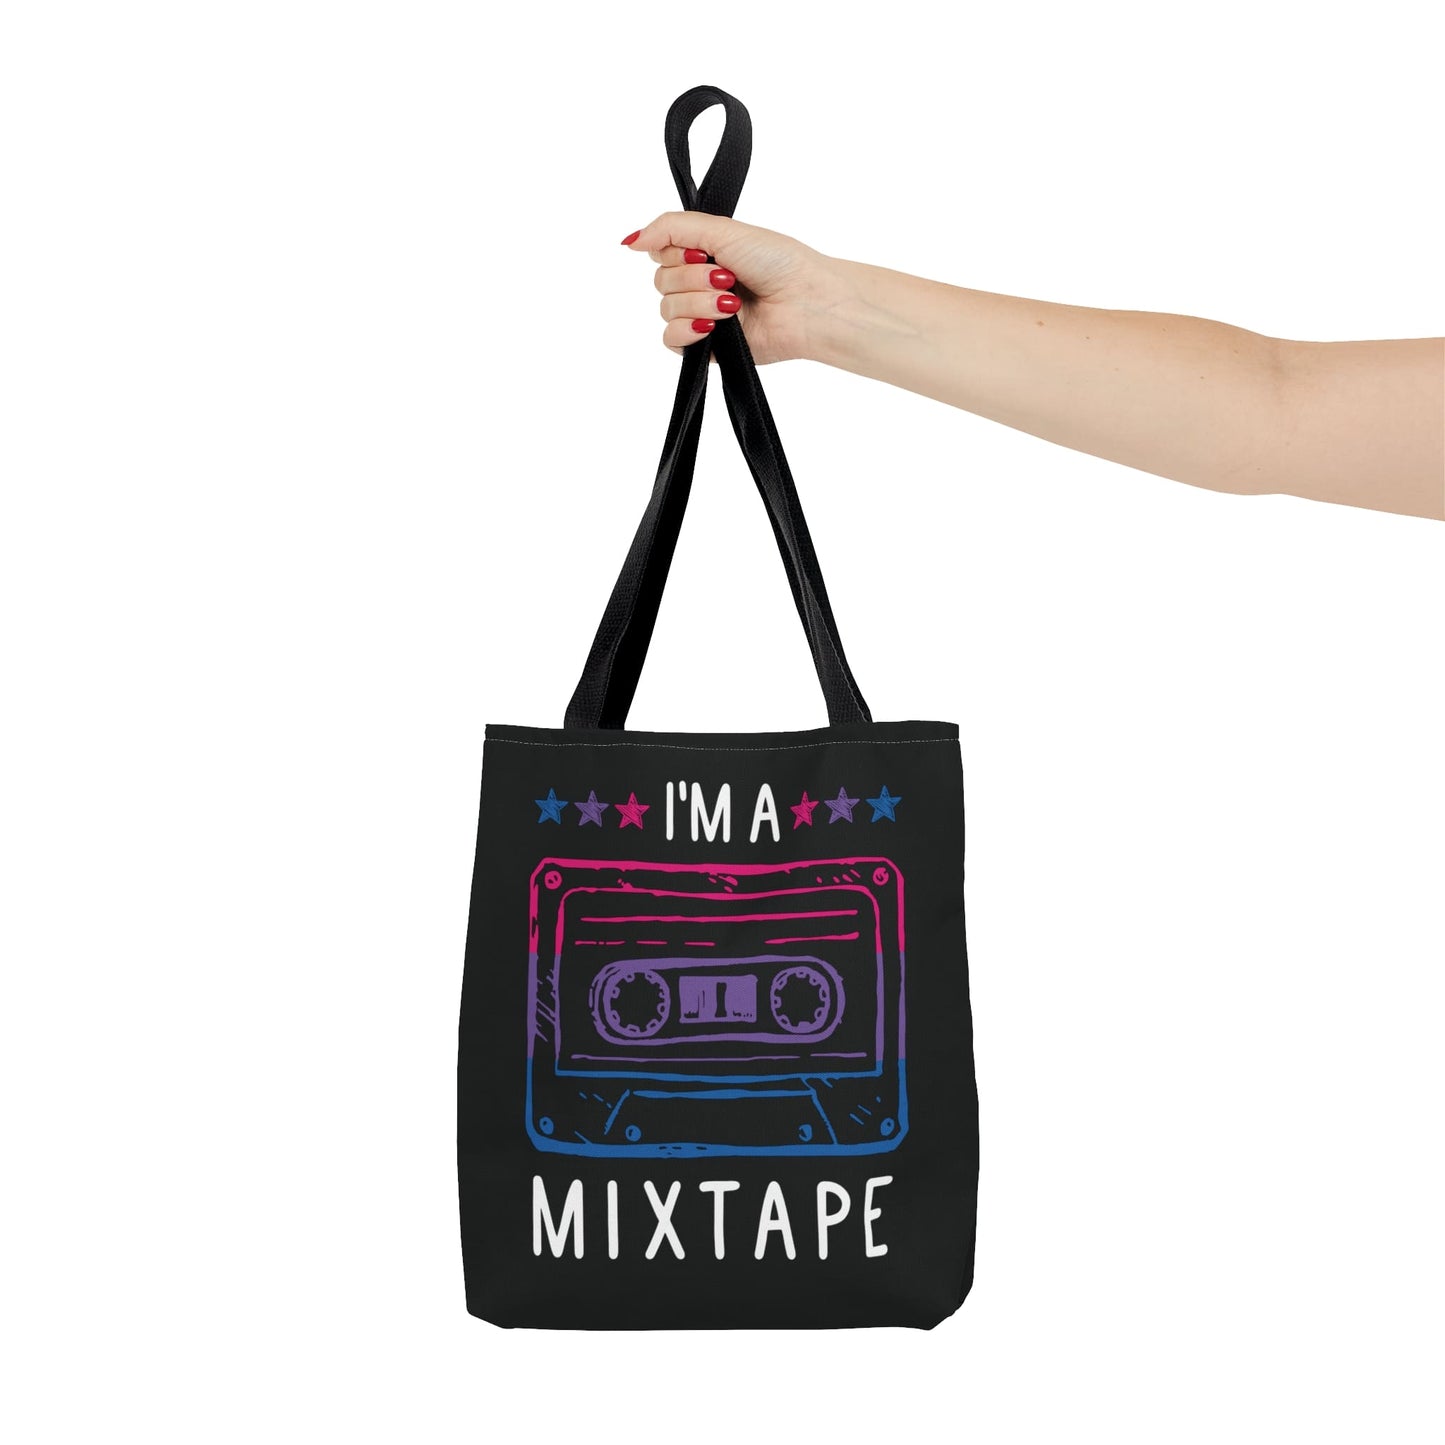 bisexual tote bag, mixtape bi pride bag, small